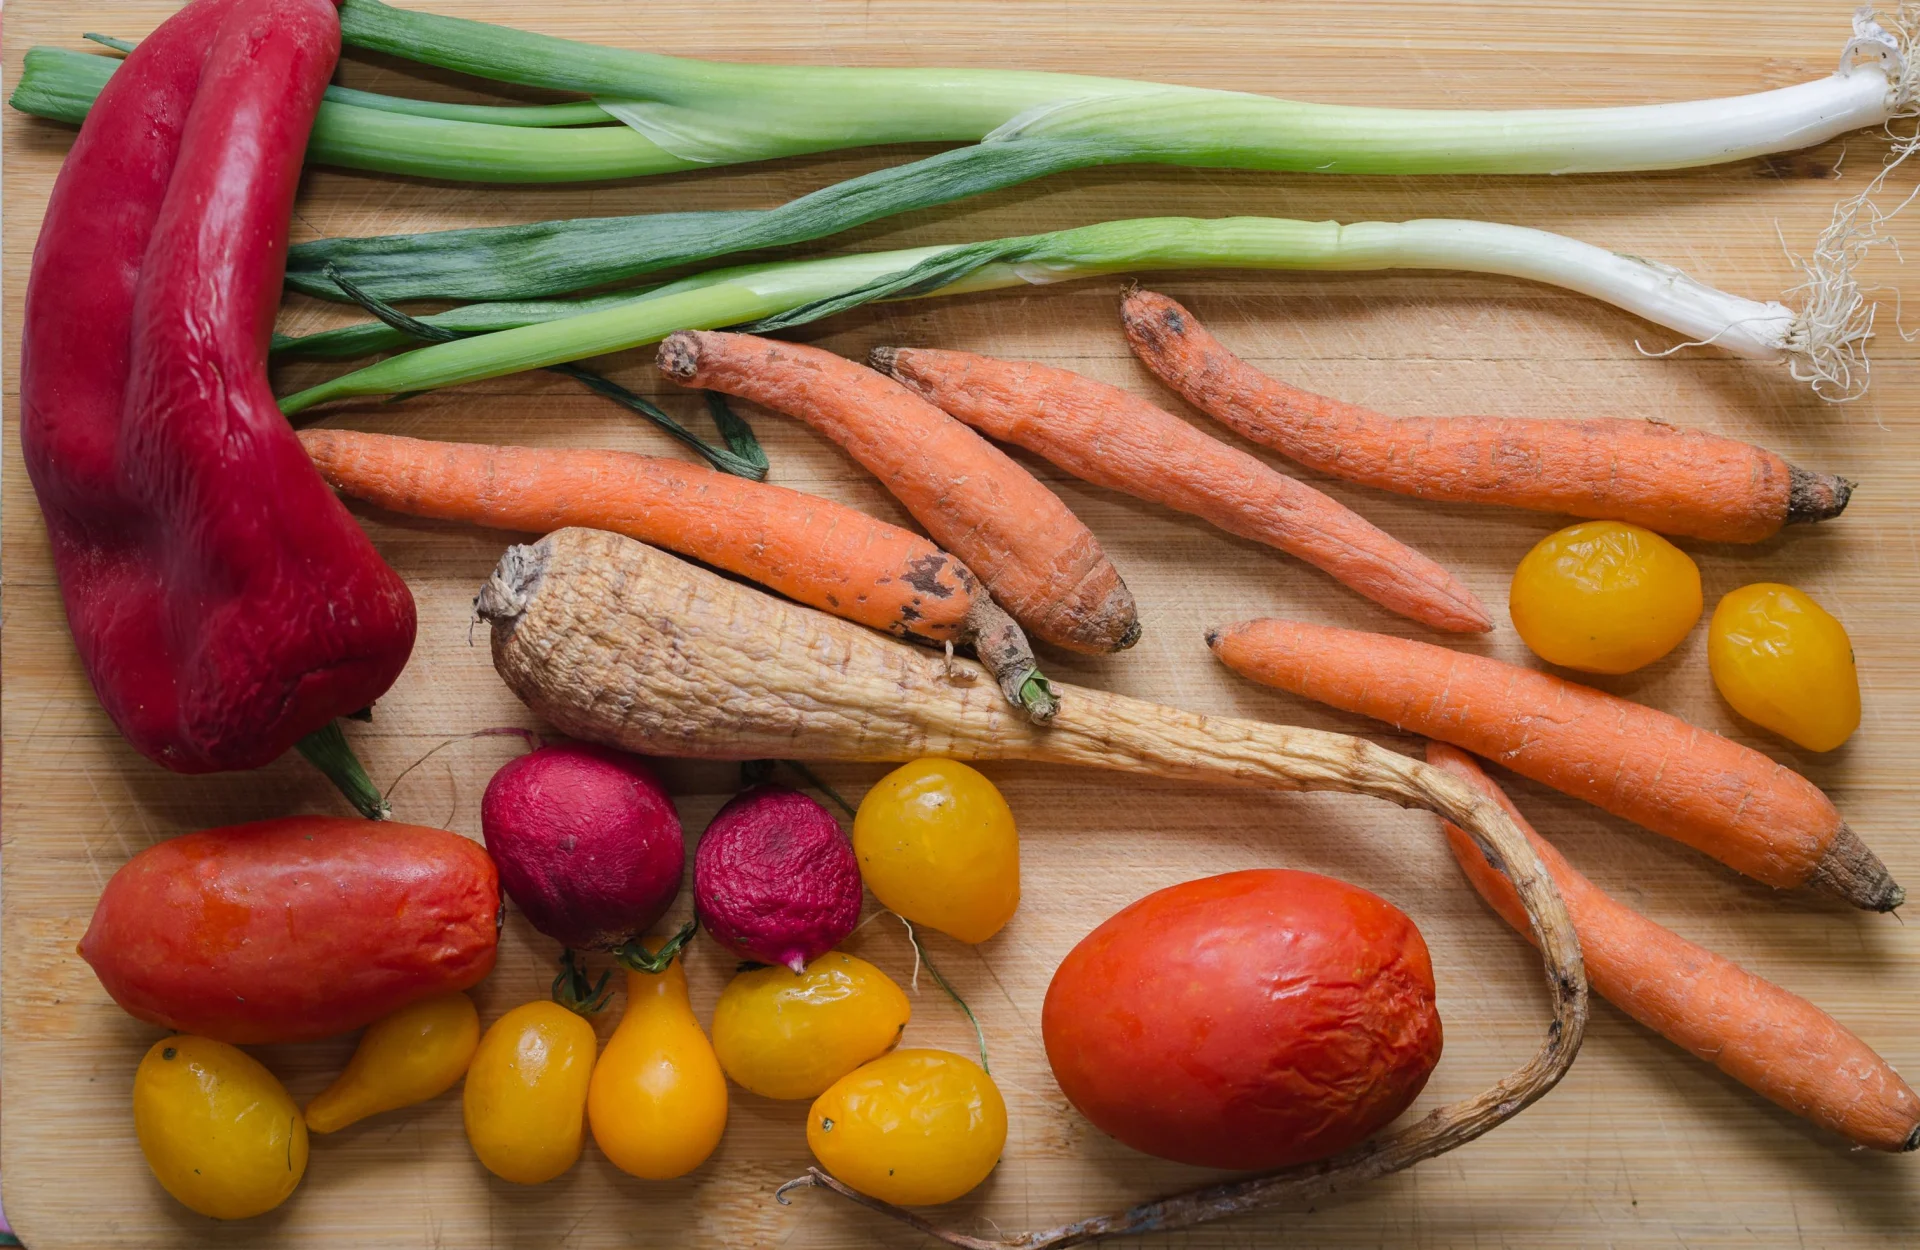 Des légumes mous comme les carottes, le poireau, le poivron et les tomates sur une table